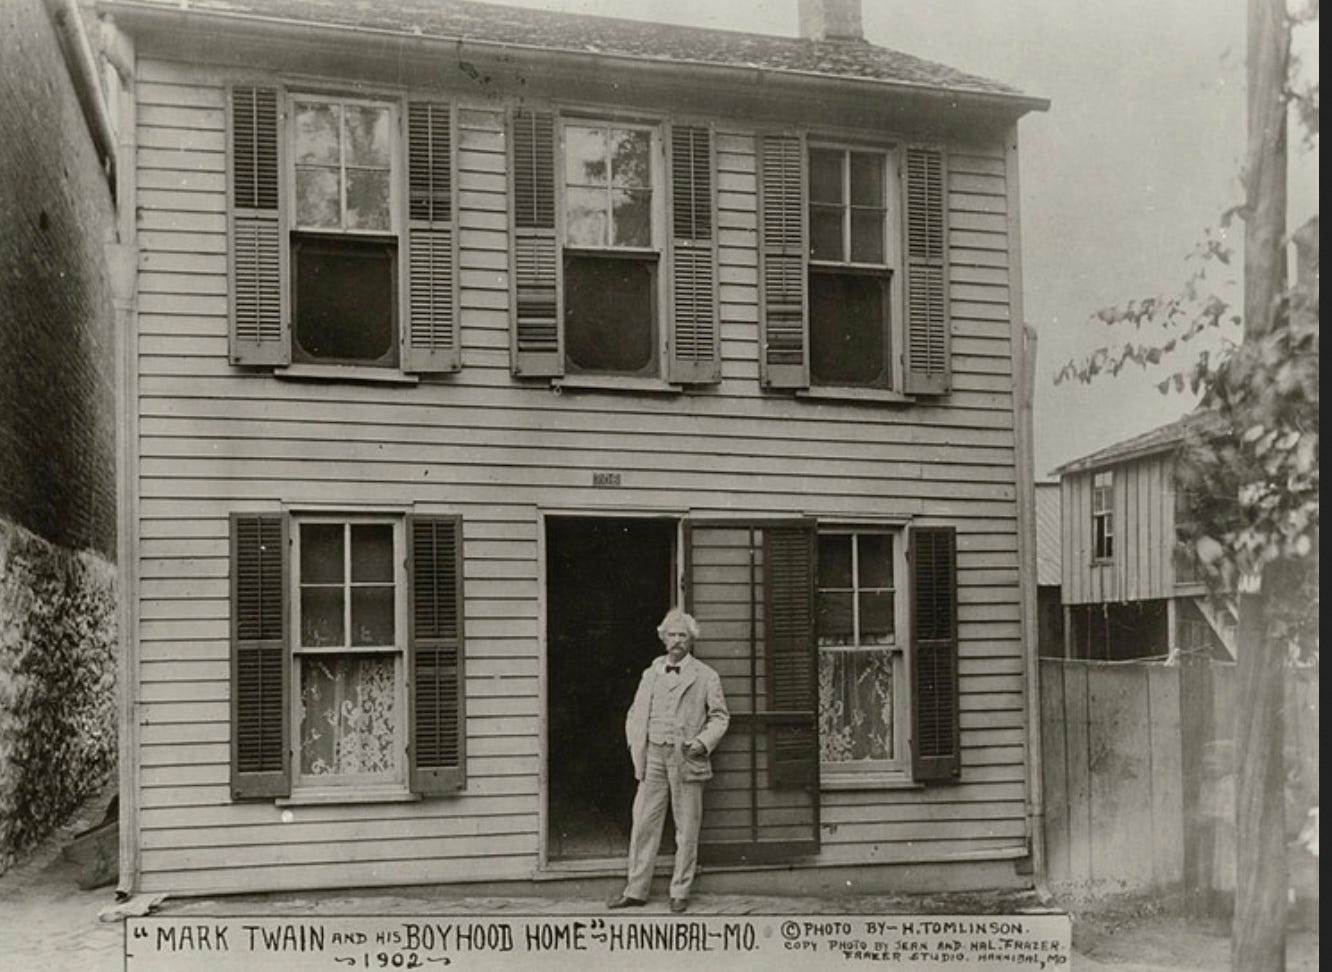 Mark Twain's boyhood home